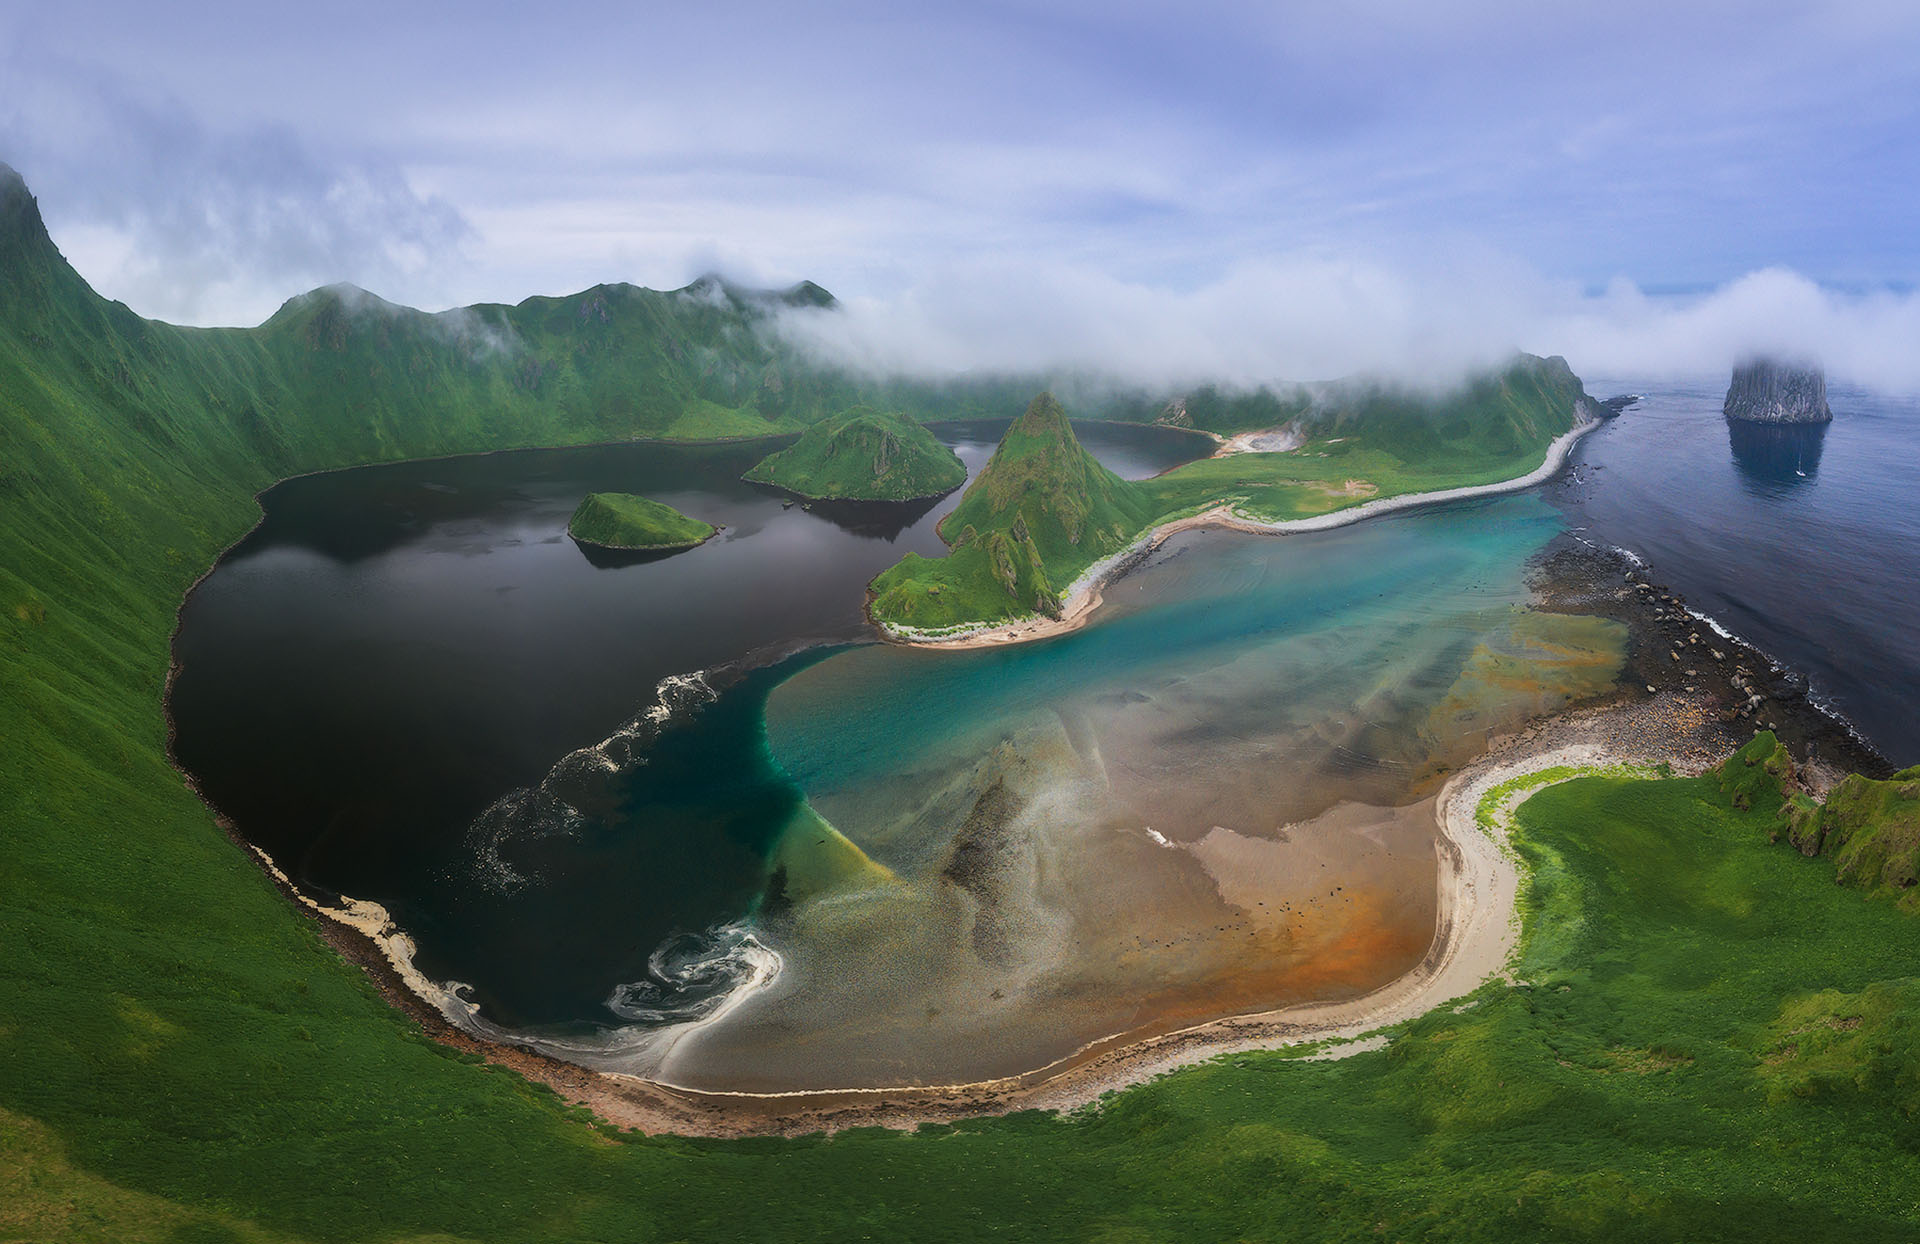 Les îles Kouriles, un archipel volcanique